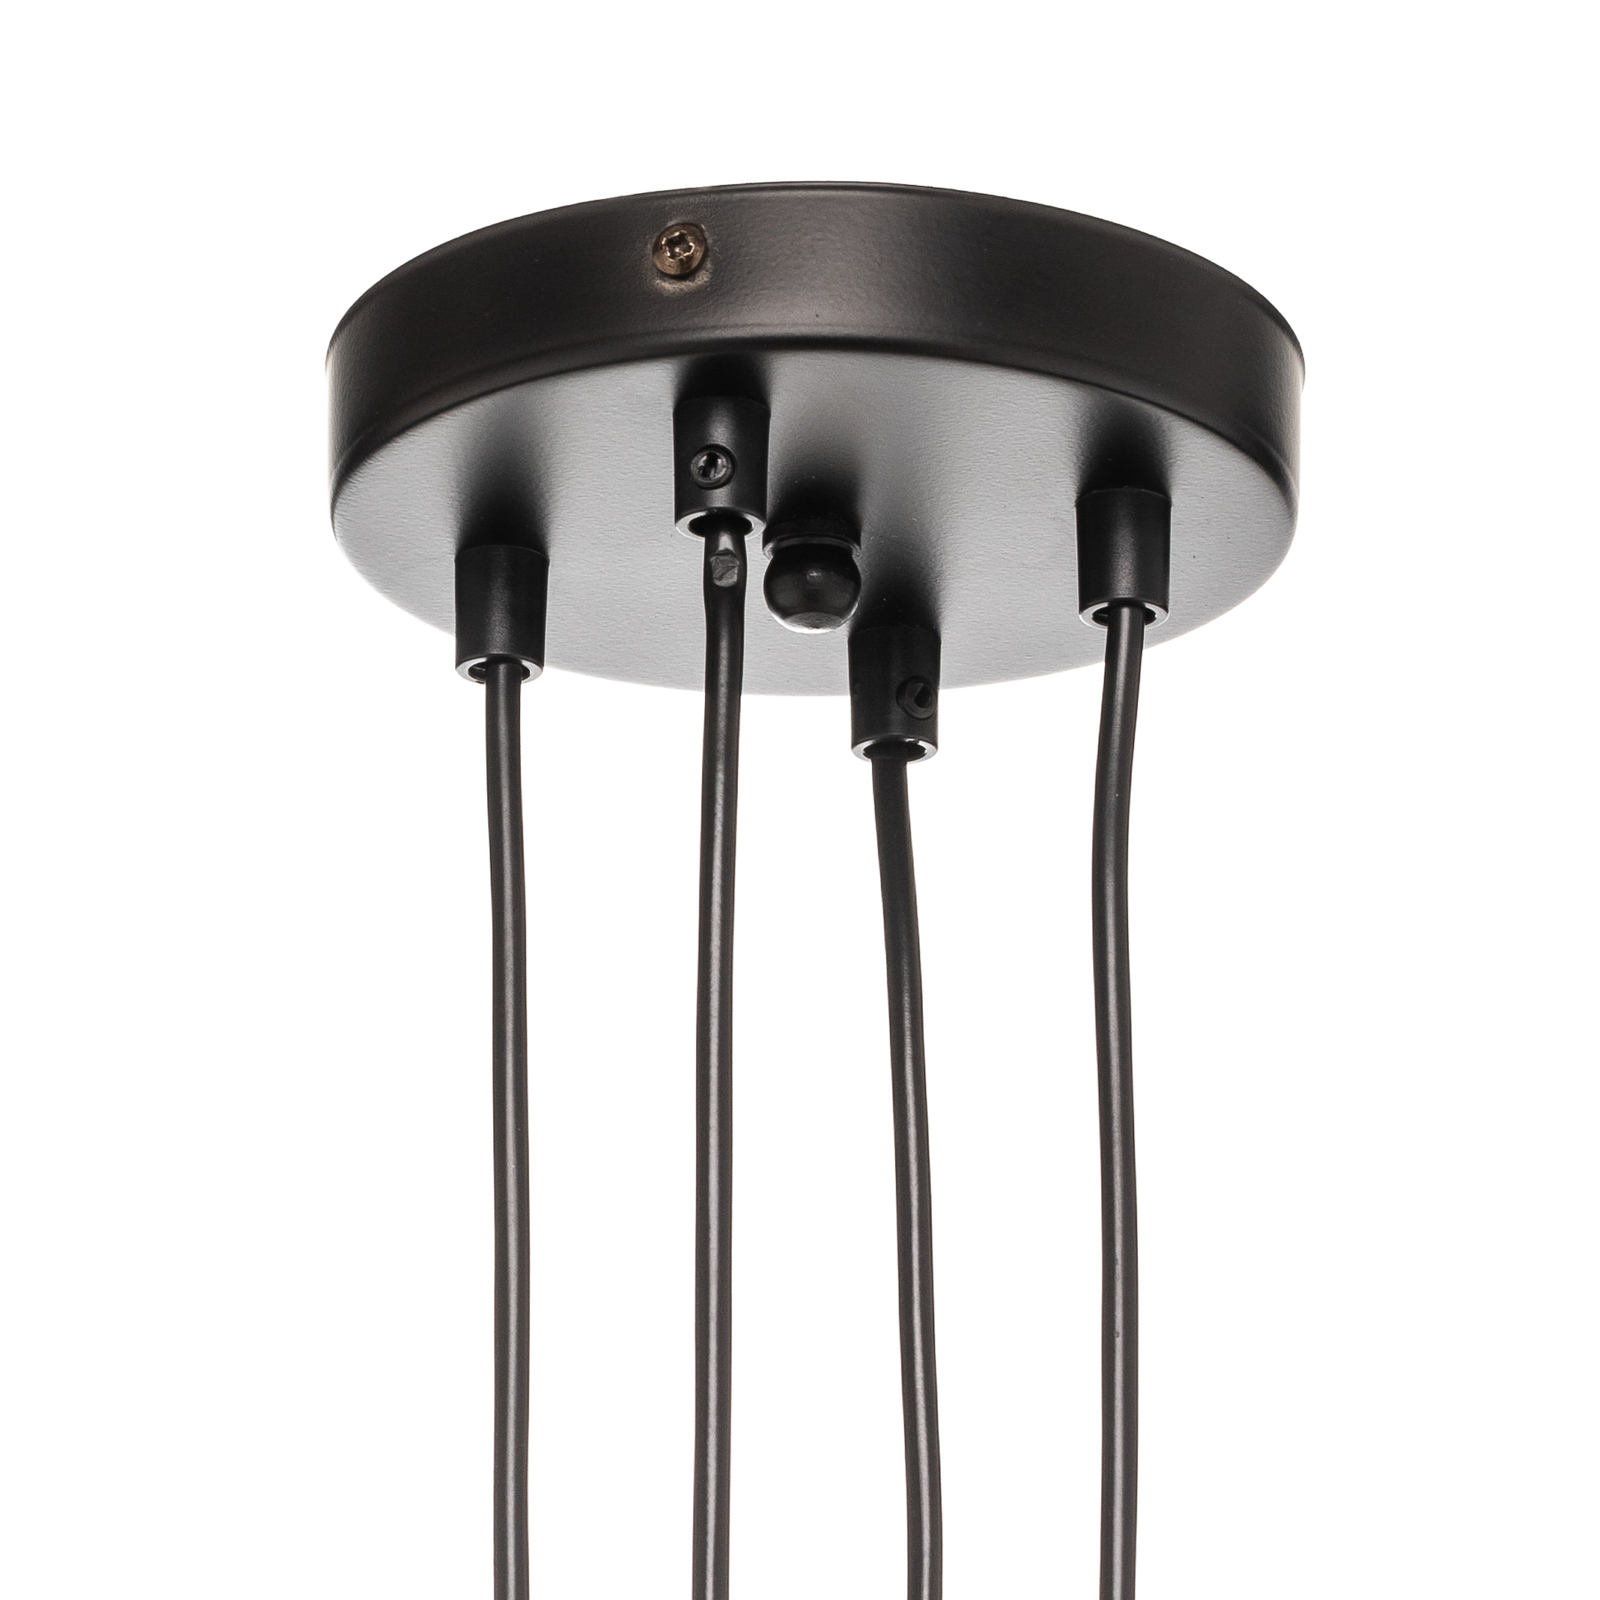 Hanglamp Multipo 4, 4-lamps, zwart